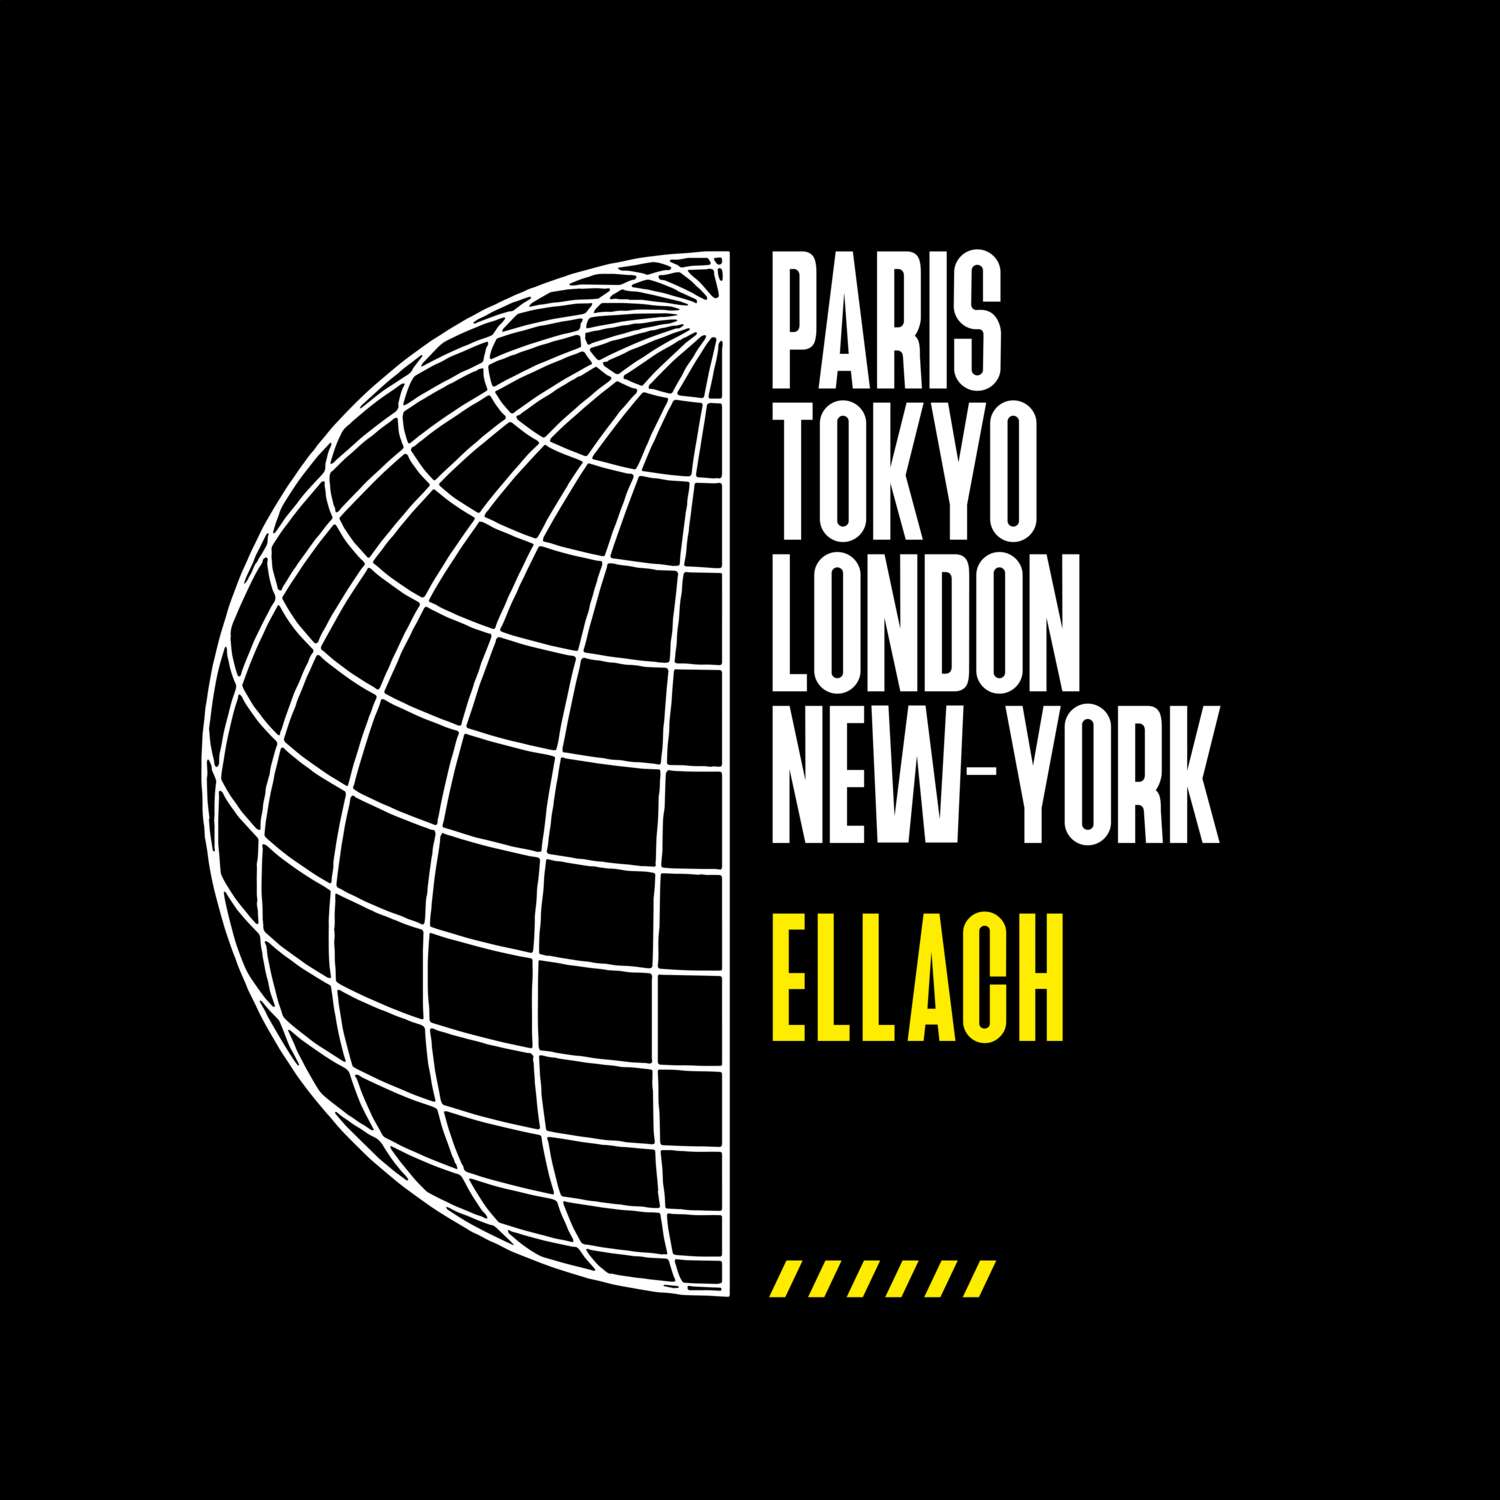 Ellach T-Shirt »Paris Tokyo London«